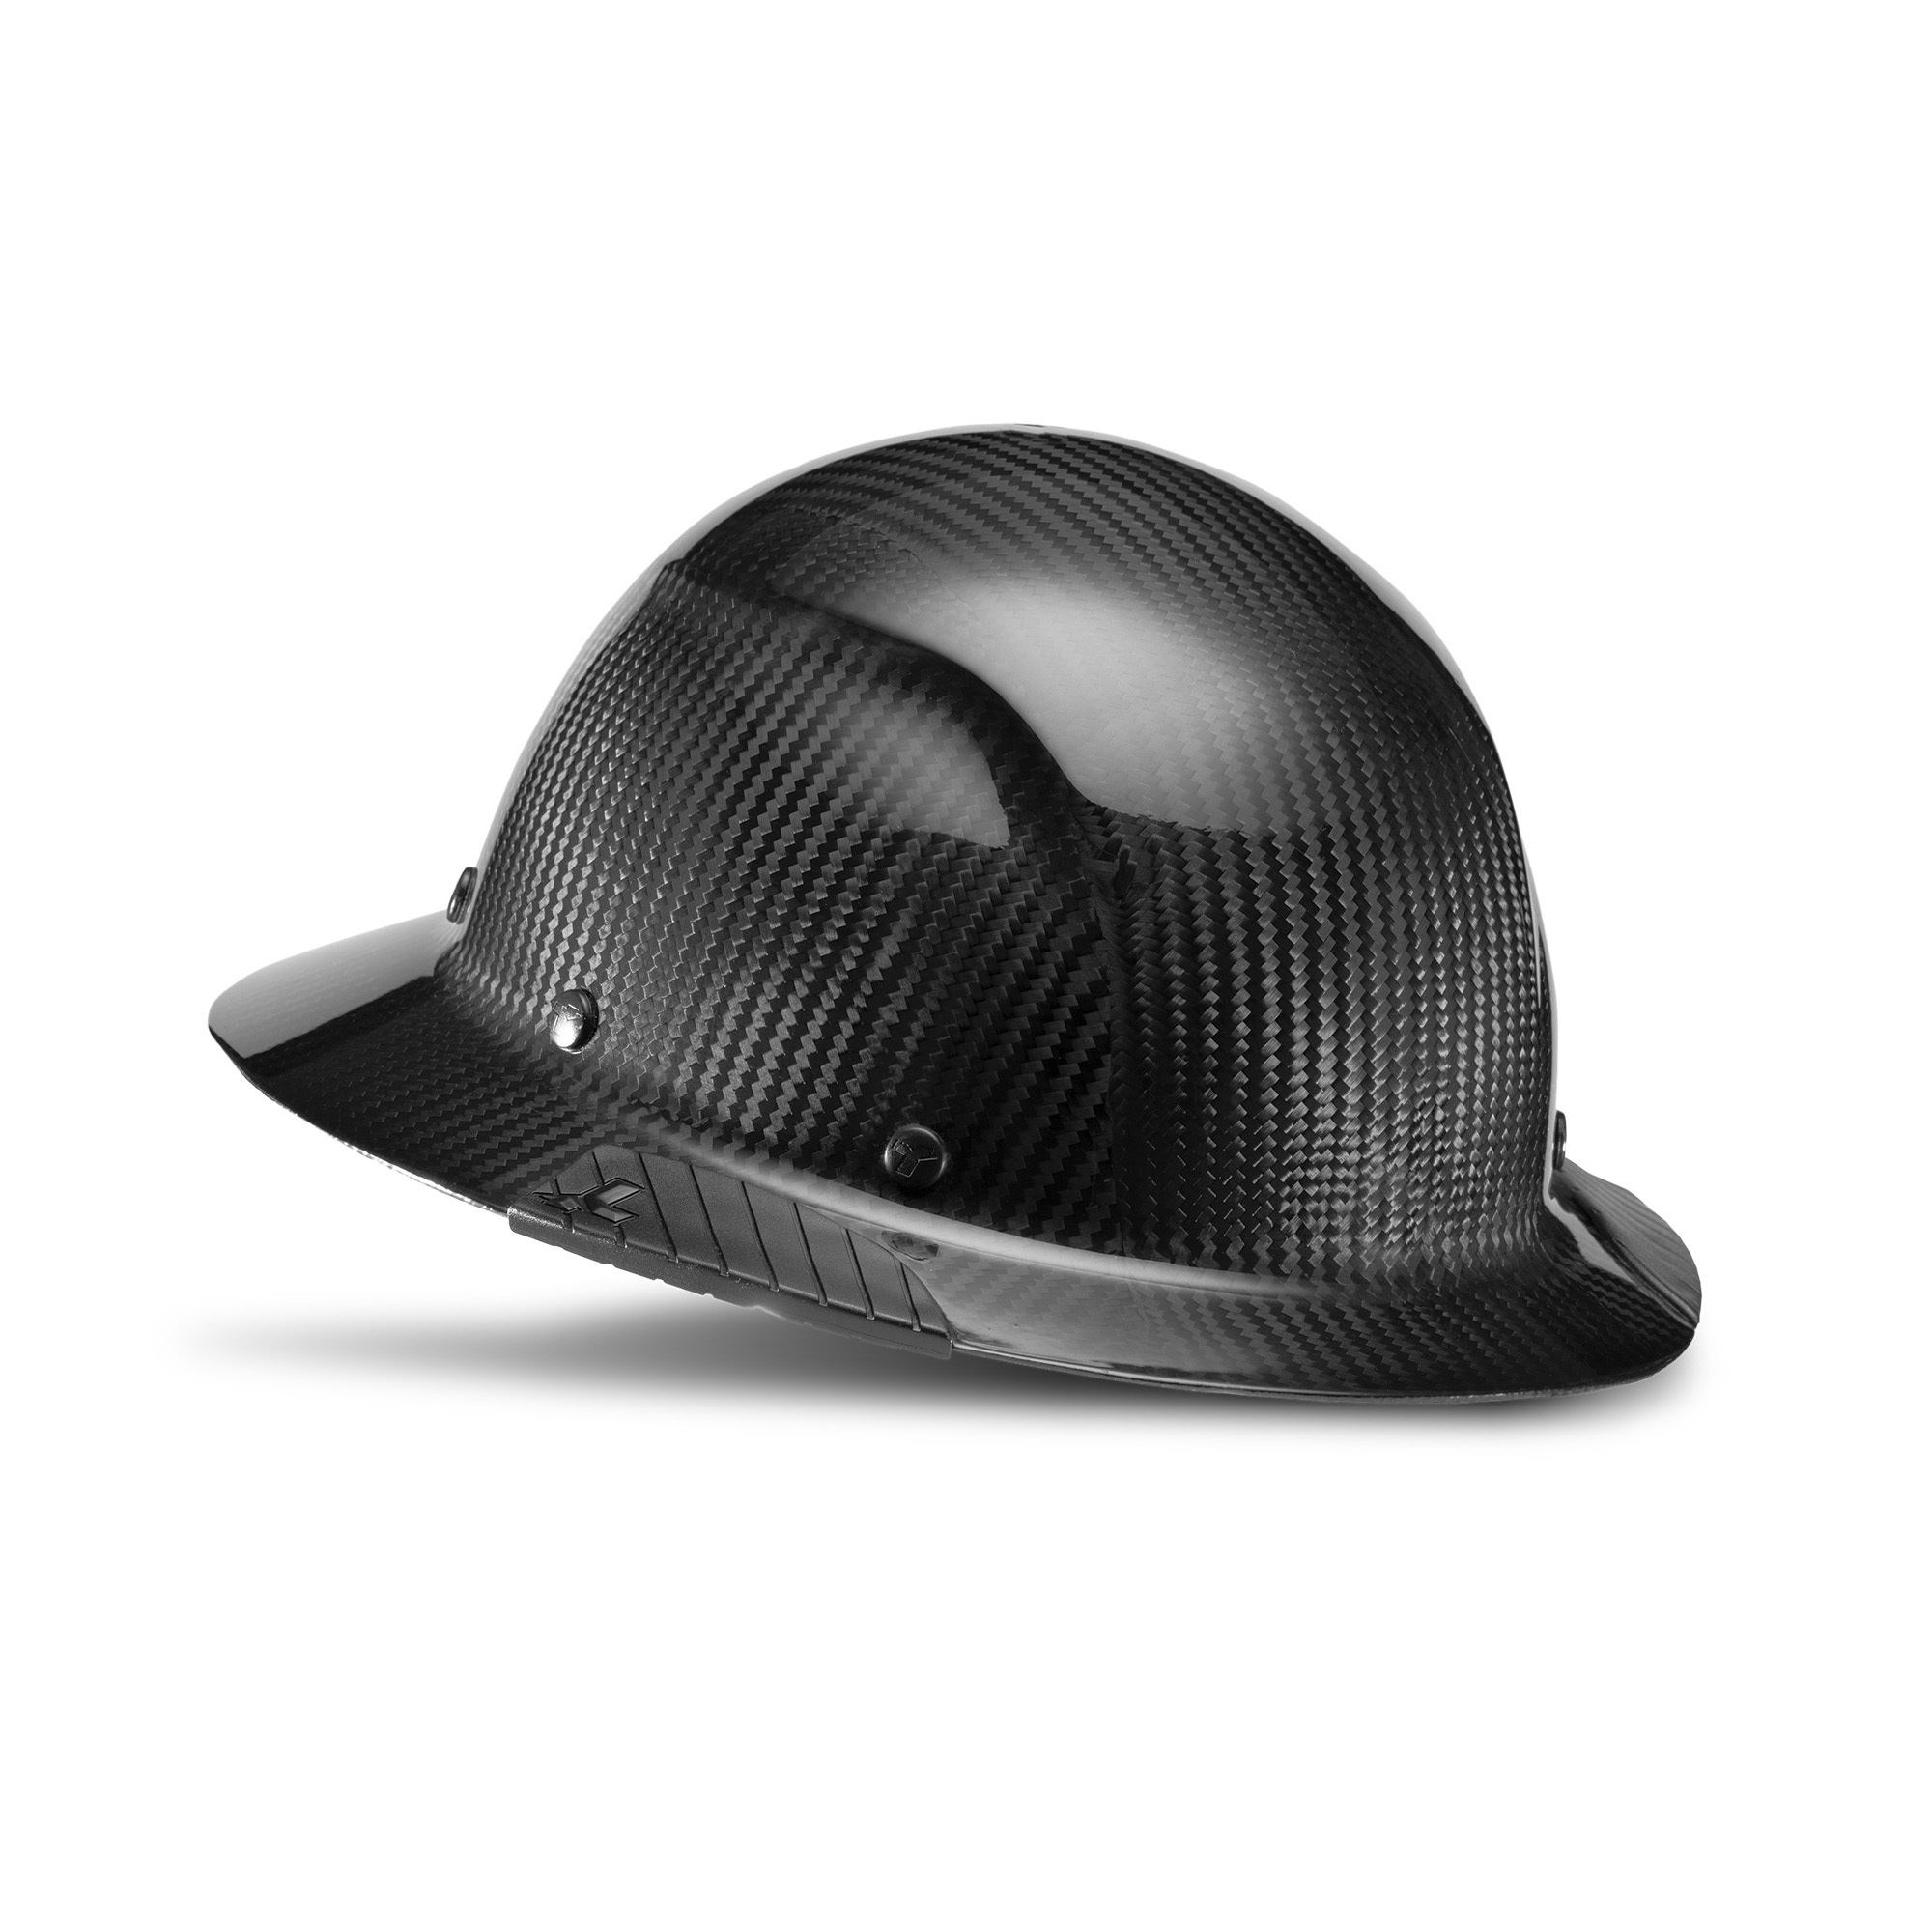 LIFT Safety, DAX Carbon Fiber Full Brim (Black), Hard Hat Style Full Brim, Hat Size Adjustable, Color Other, Model HDC-15KG